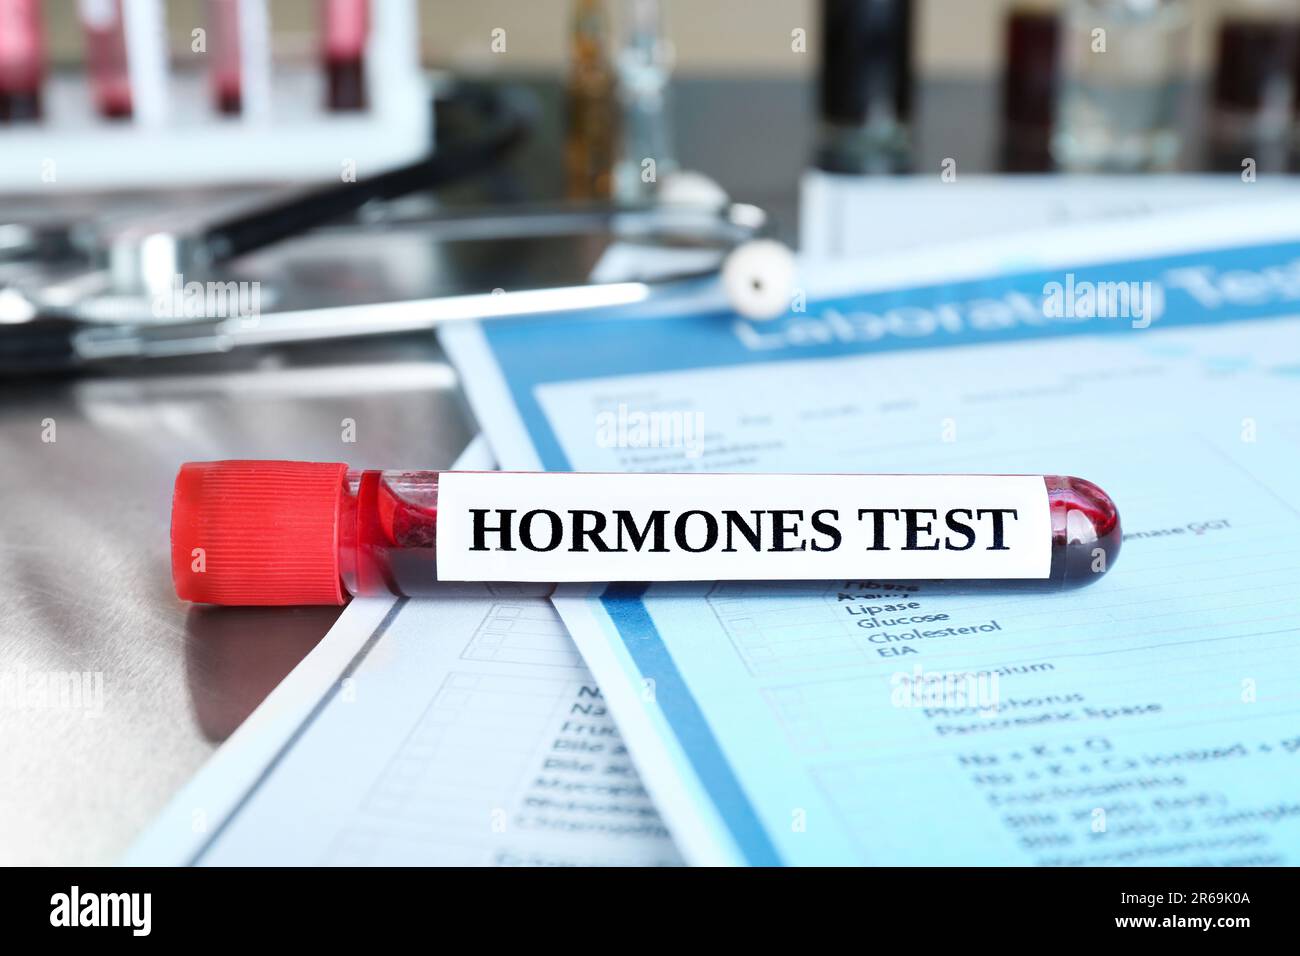 Glasröhrchen mit Blutprobe und Etikett Hormone Test auf einem Metalltisch Stockfoto